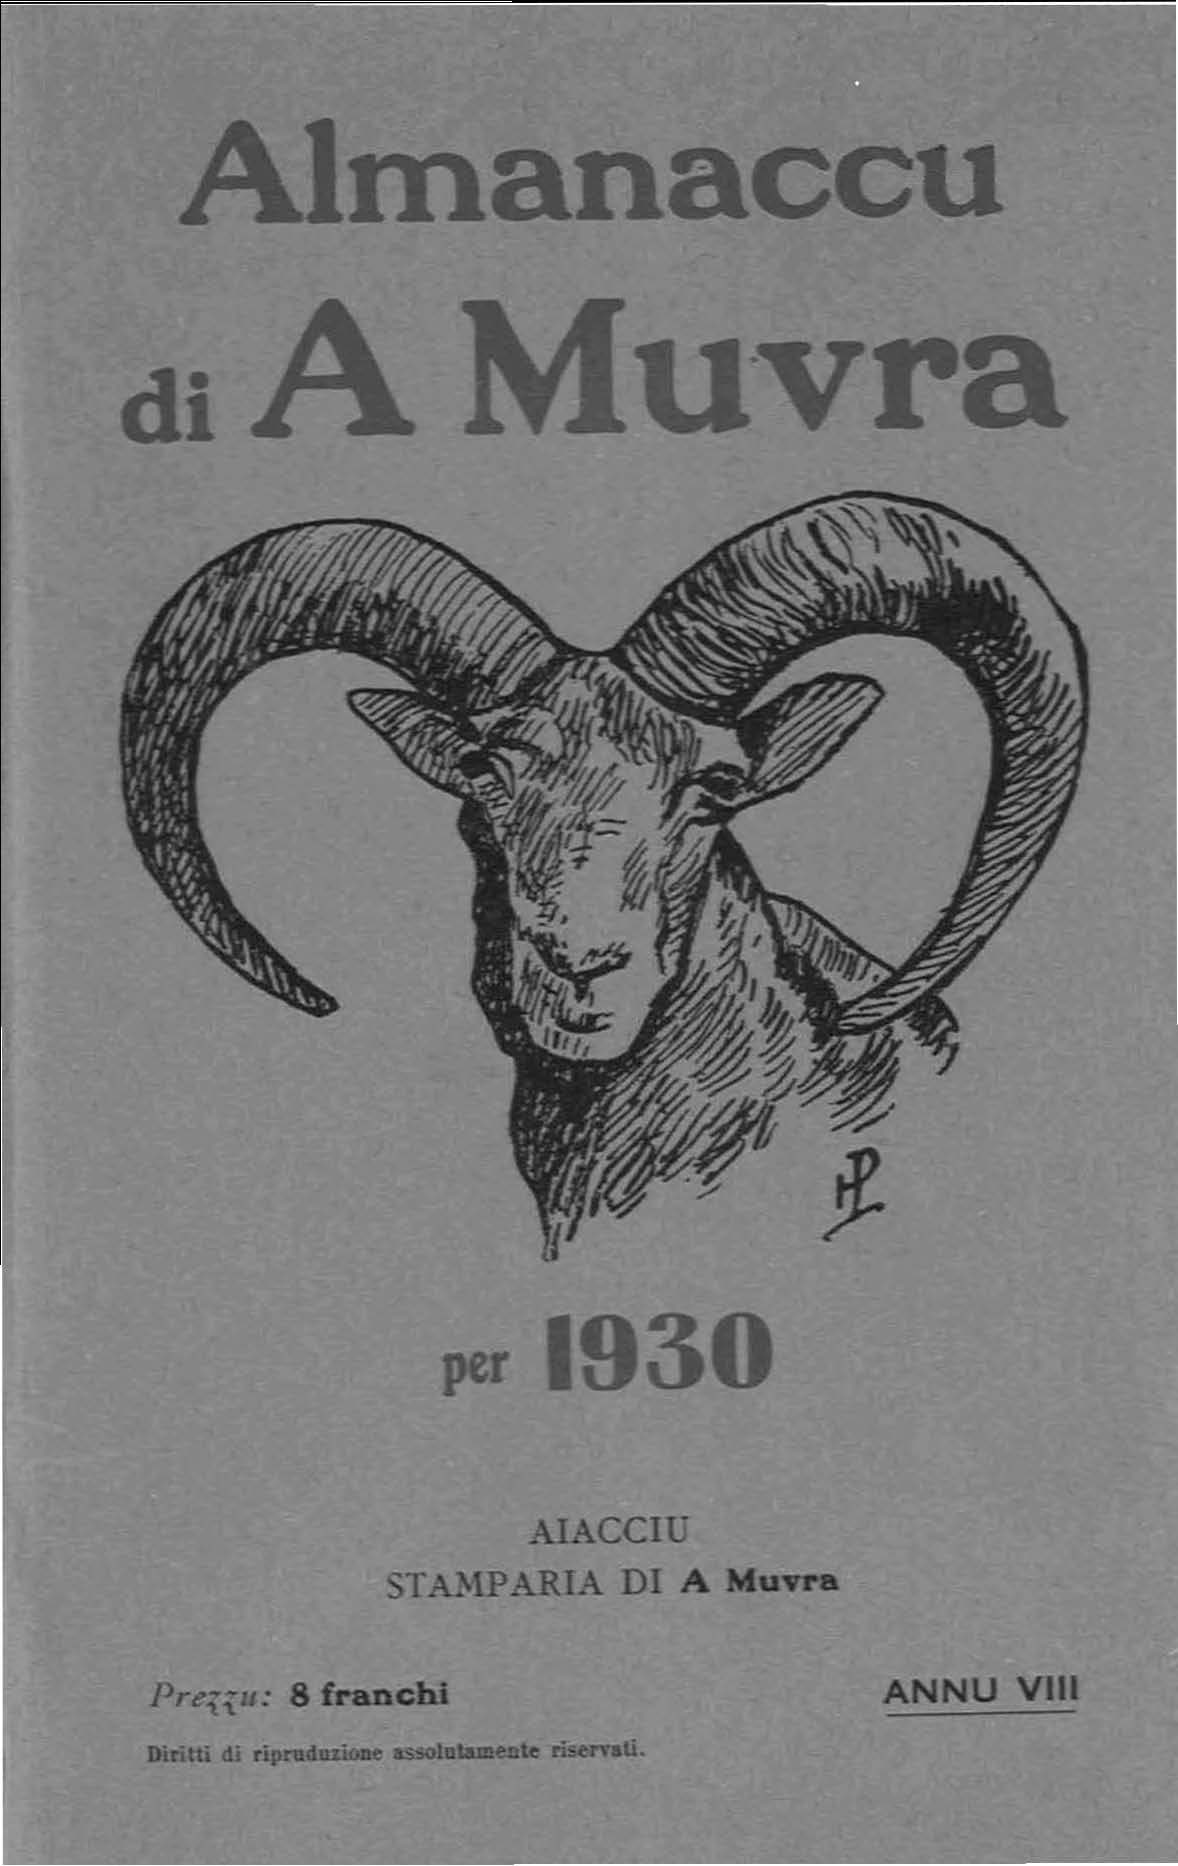 >Almanaccu di a Muvra 1930